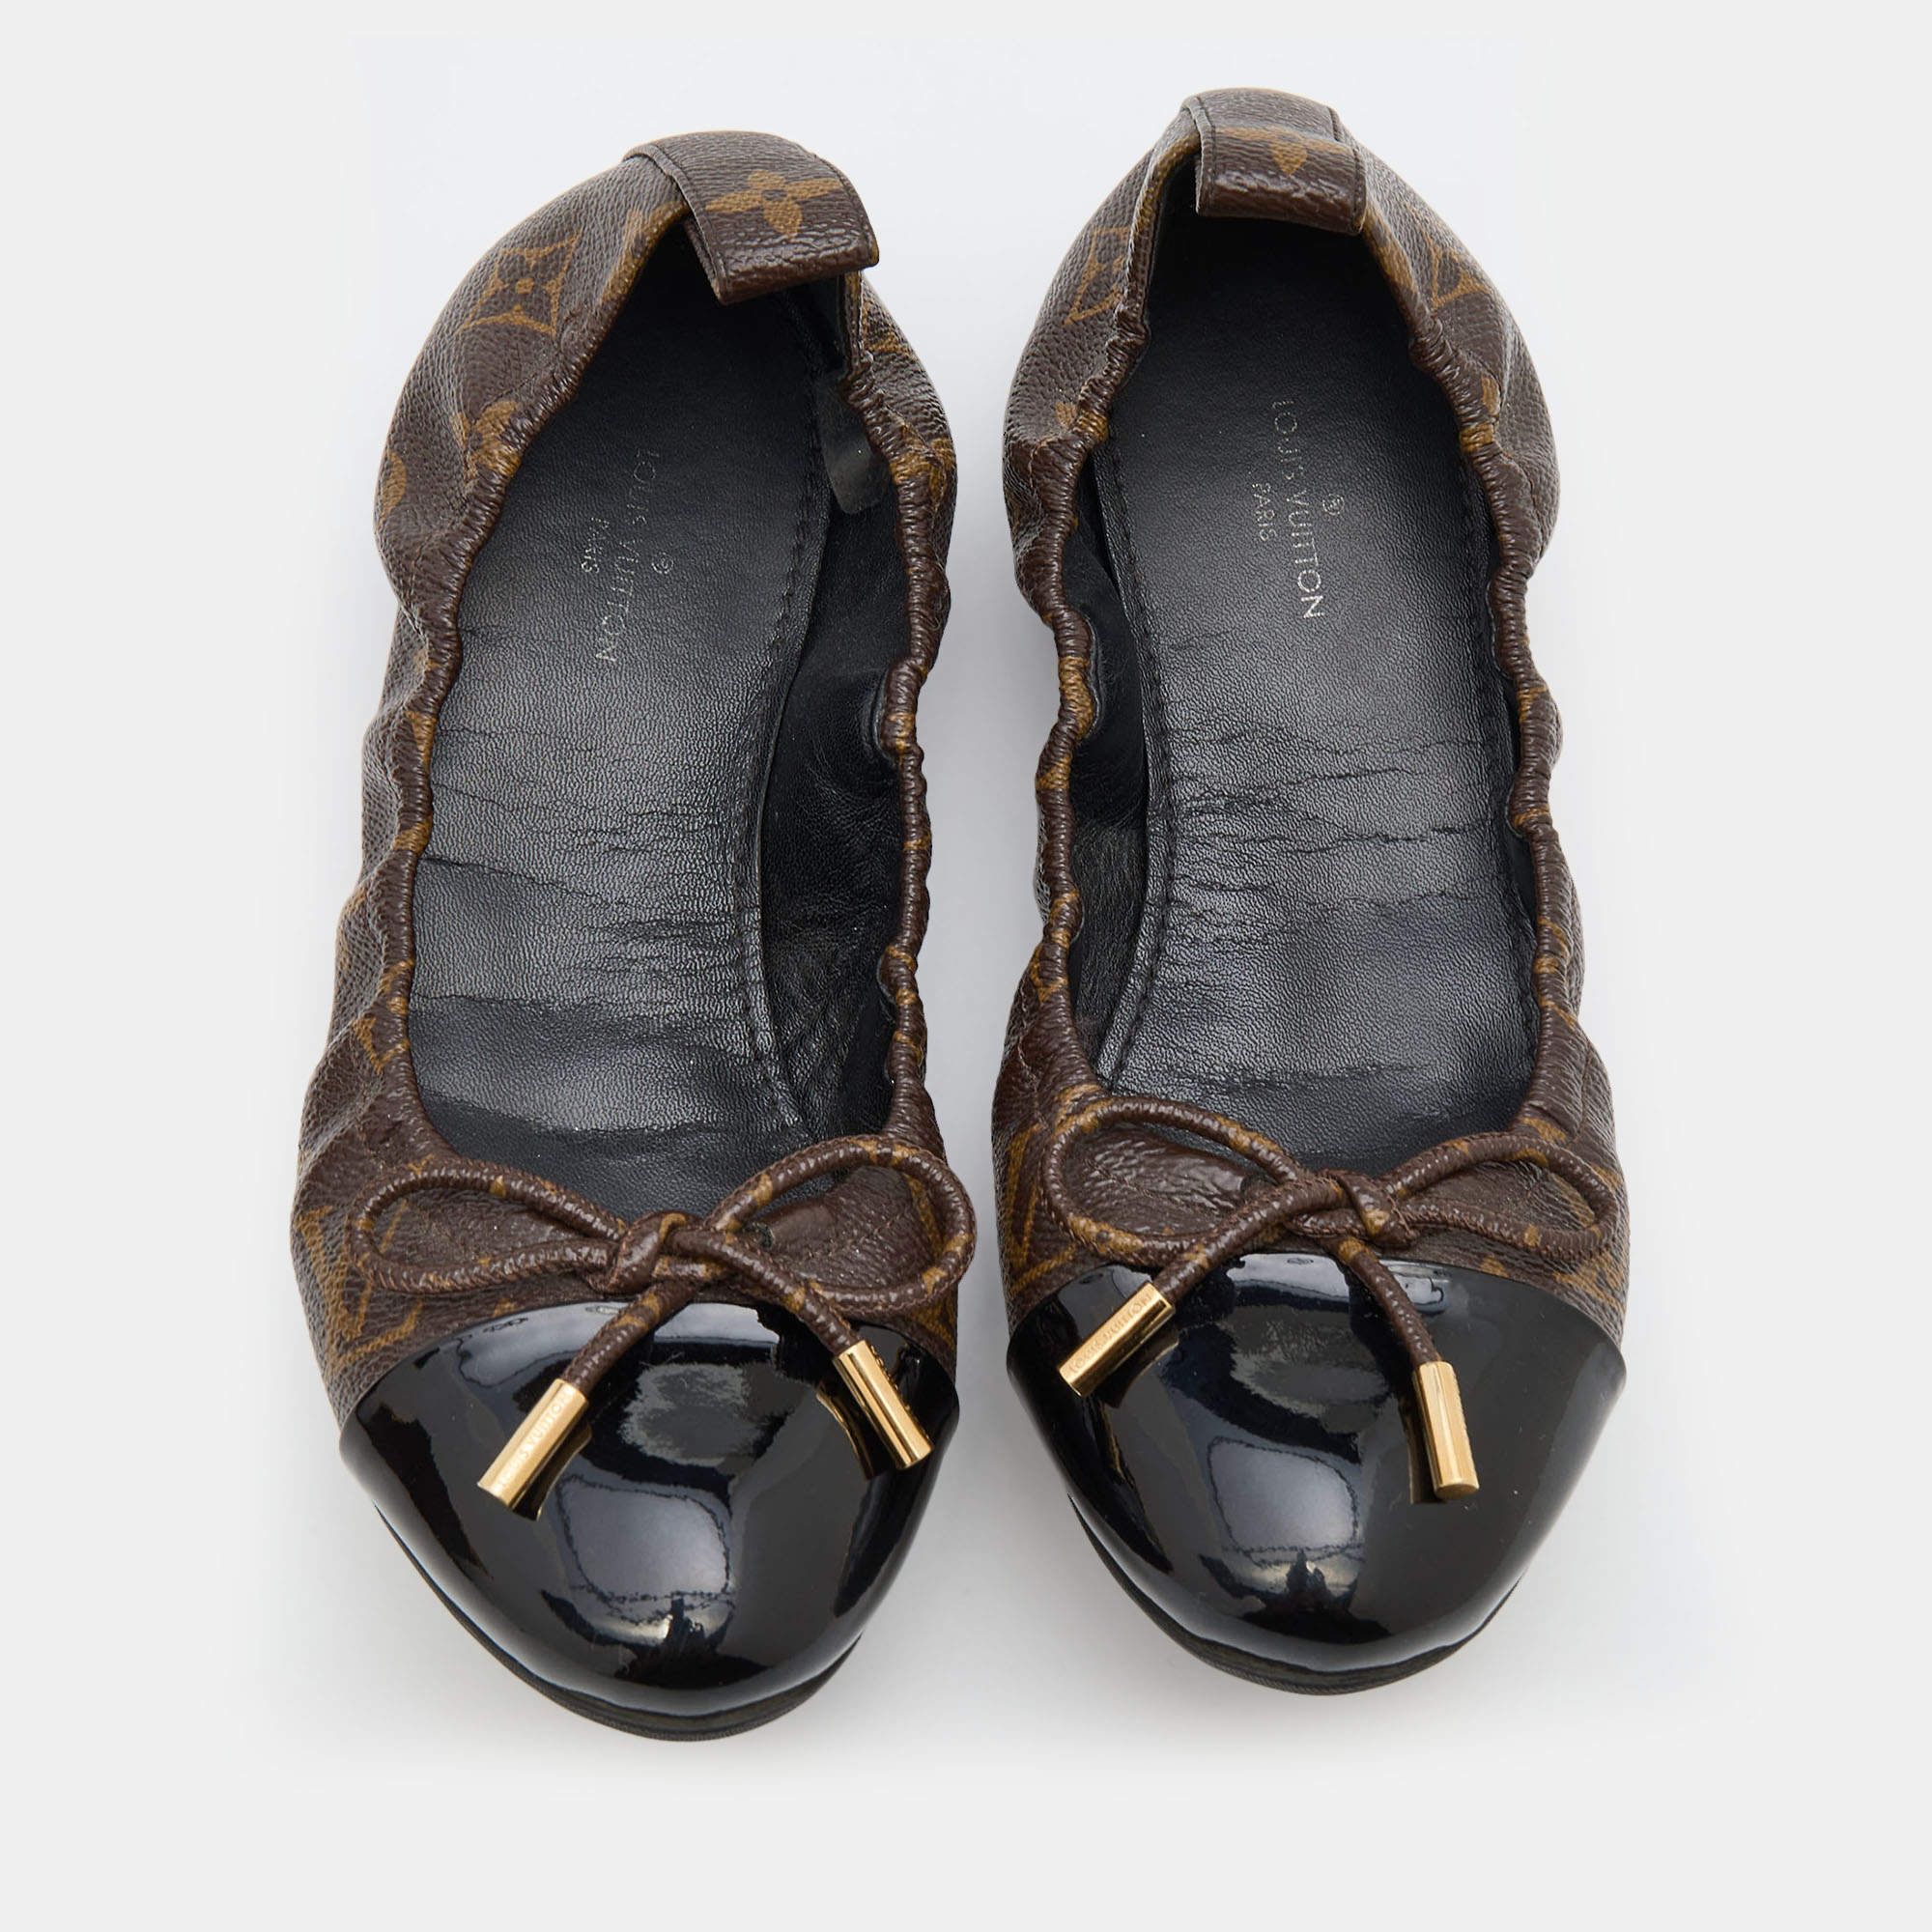 Louis Vuitton Leather Ballet Flats - Black Flats, Shoes - LOU772472